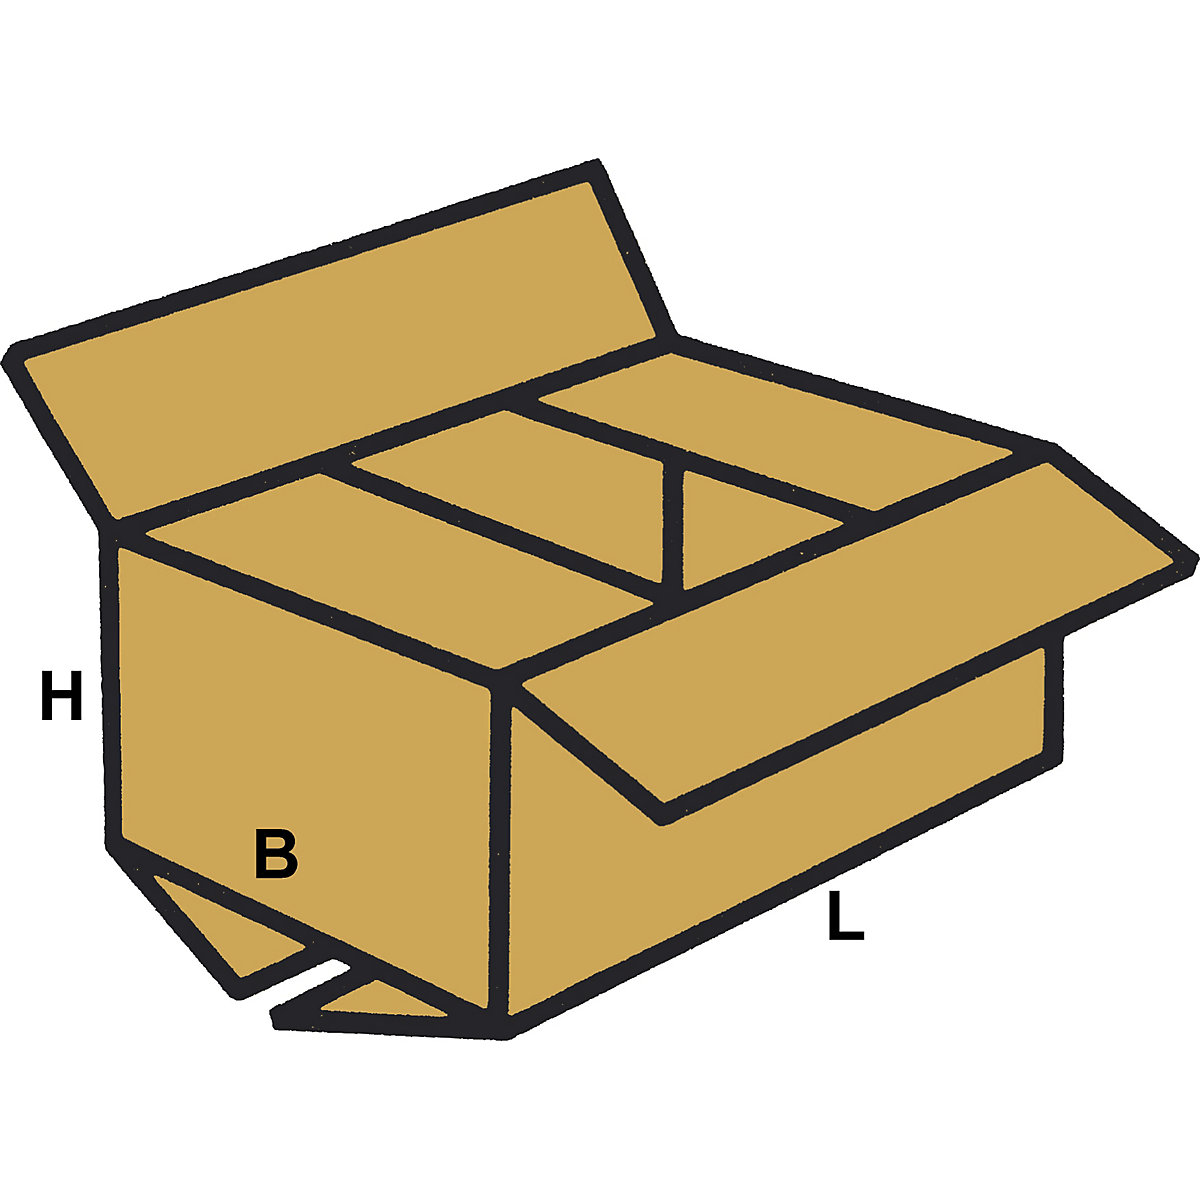 FEFCO 0201 color marrón Caja de cartón 217 x 172 x 110 mm, 2 ondulaciones 